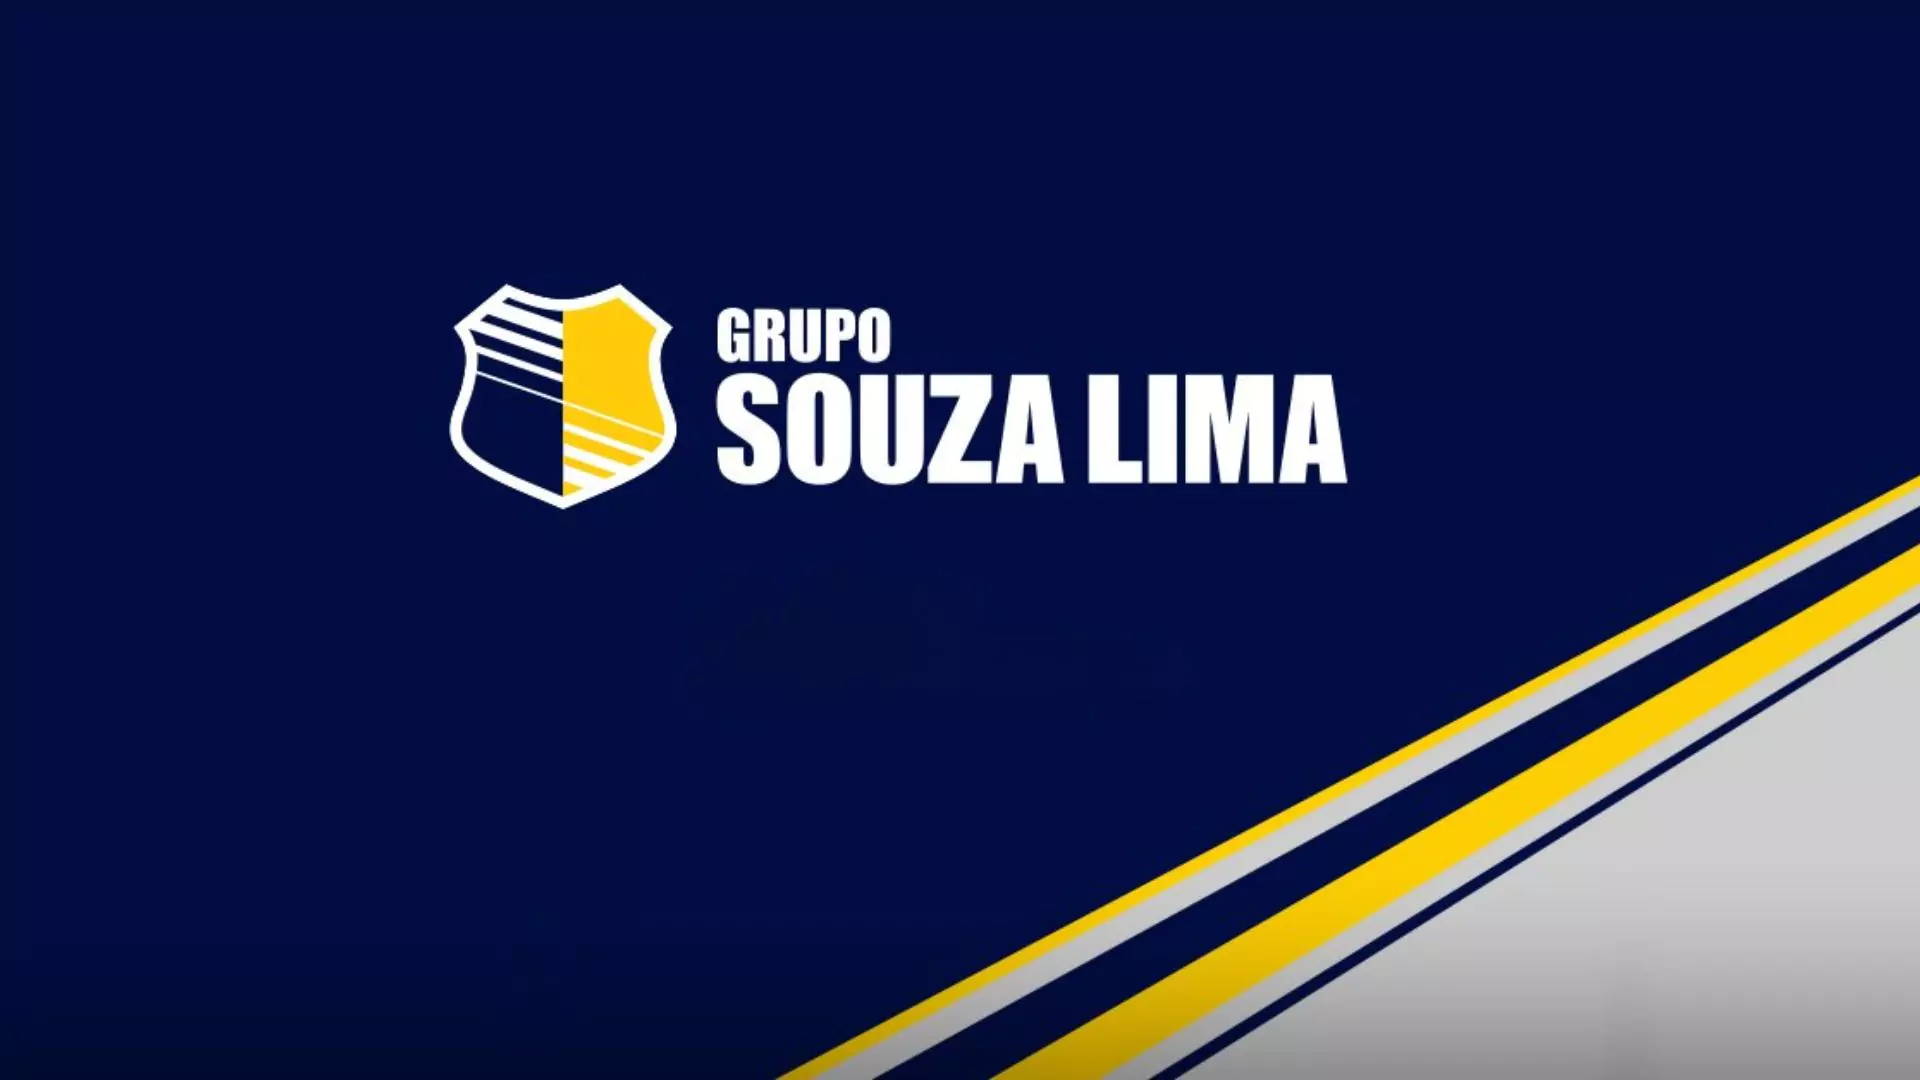 ANALISTA ADMINISTRATIVO: O Grupo Souza Lima Abriu Excelente Vaga Presencial!, ANALISTA DE RH no Grupo Souza Lima! Salário de R$ 3.051,13 + Benefícios!